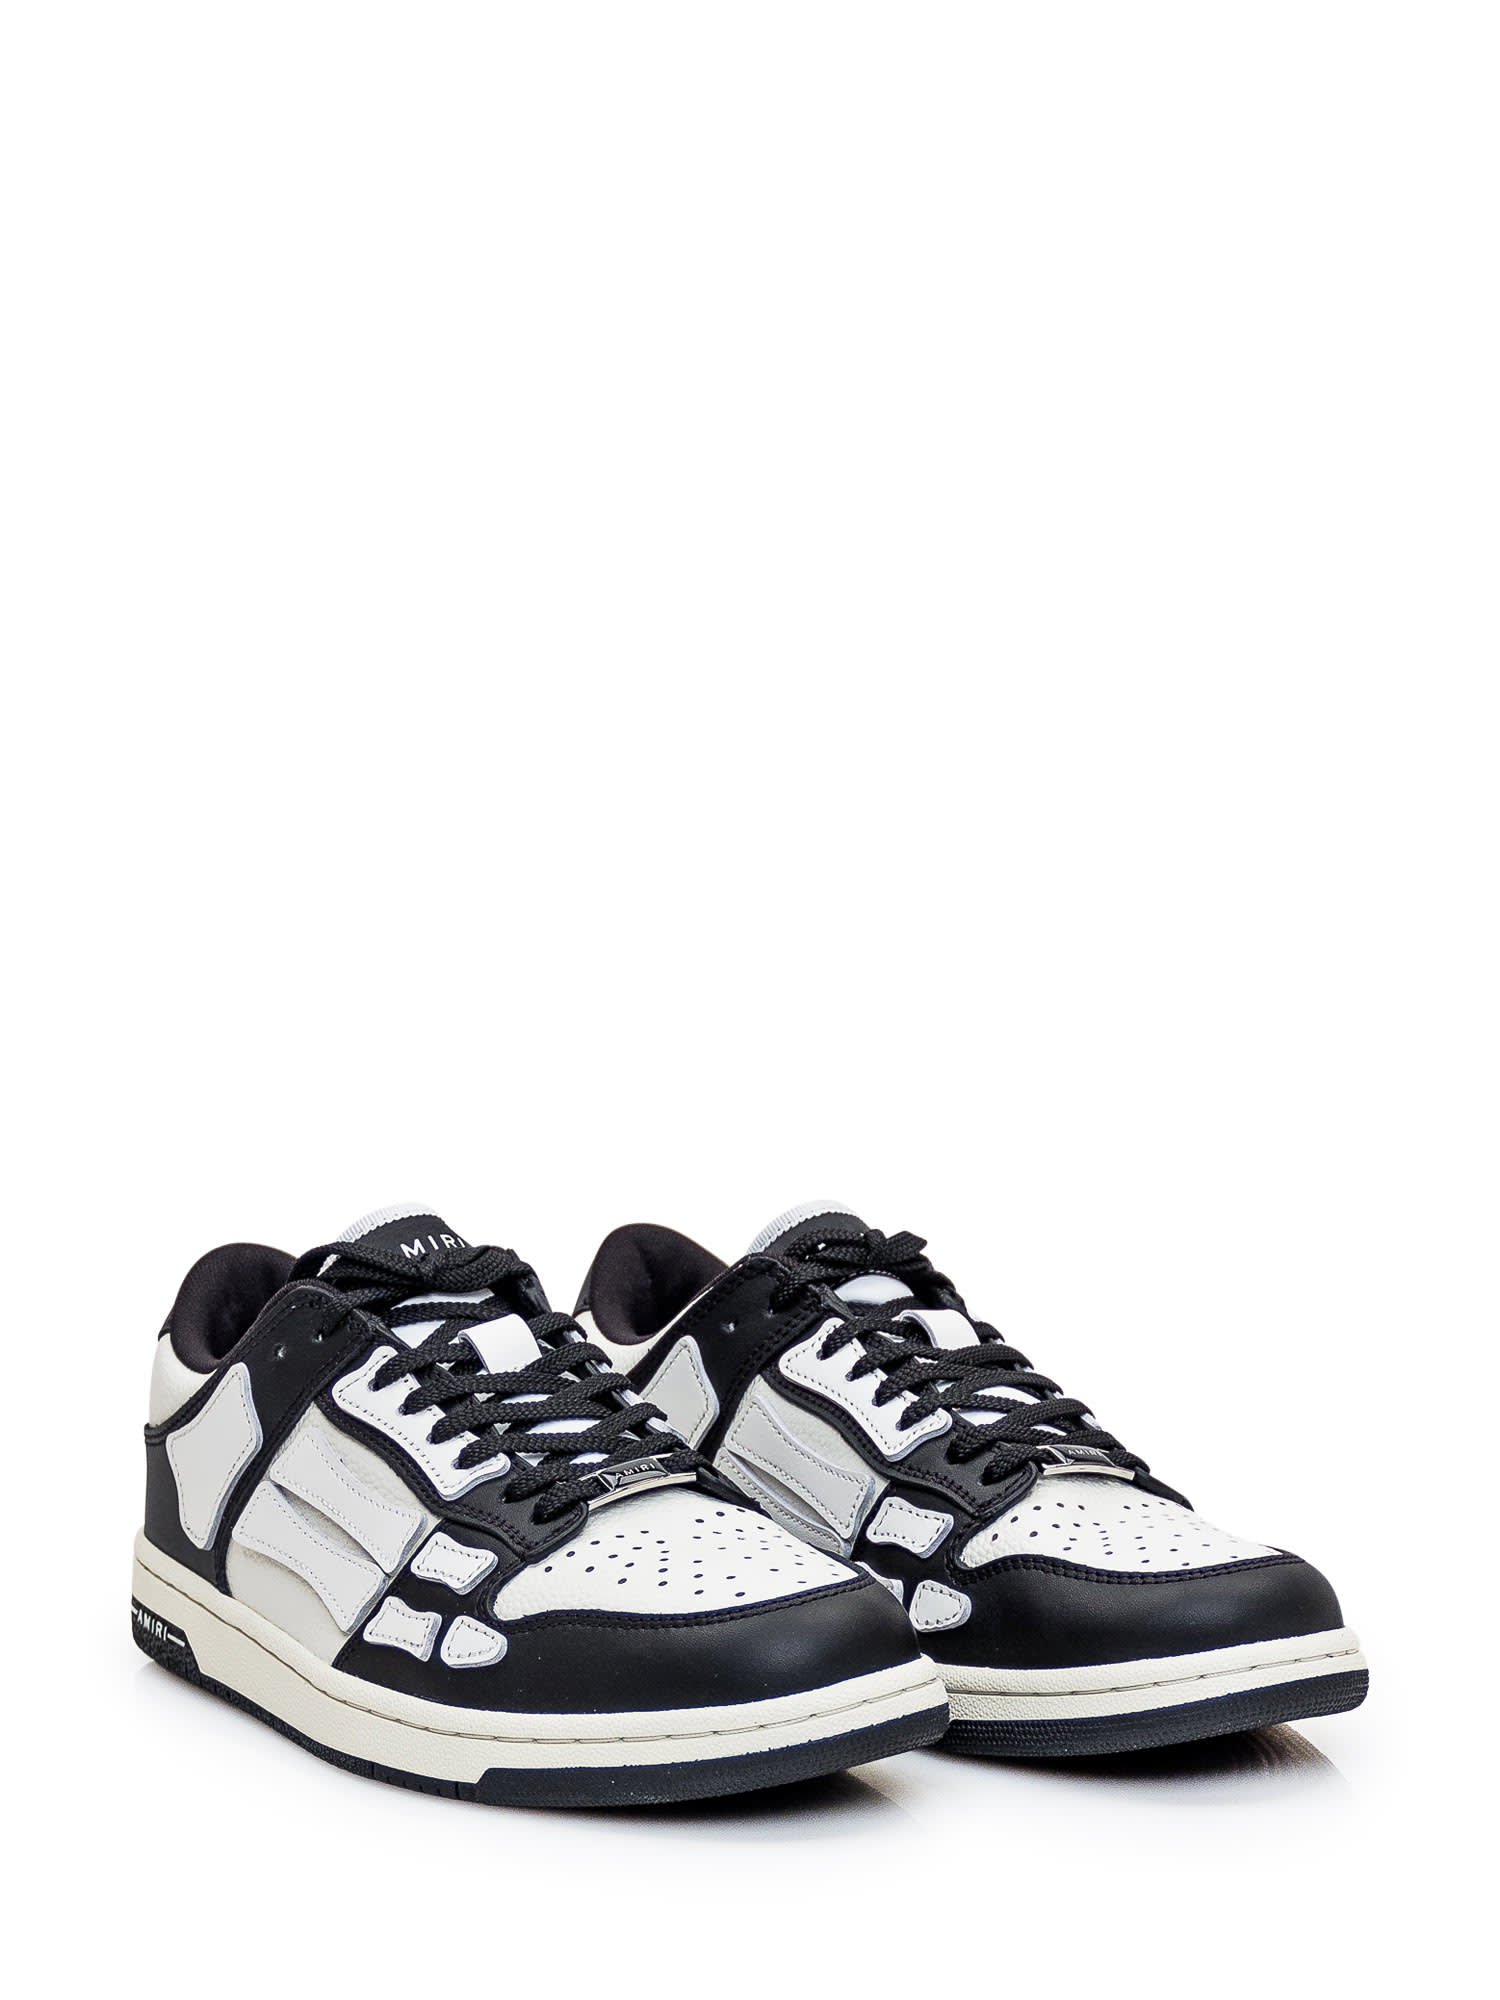 Shop Amiri Skel Top Low Sneaker In Black/white